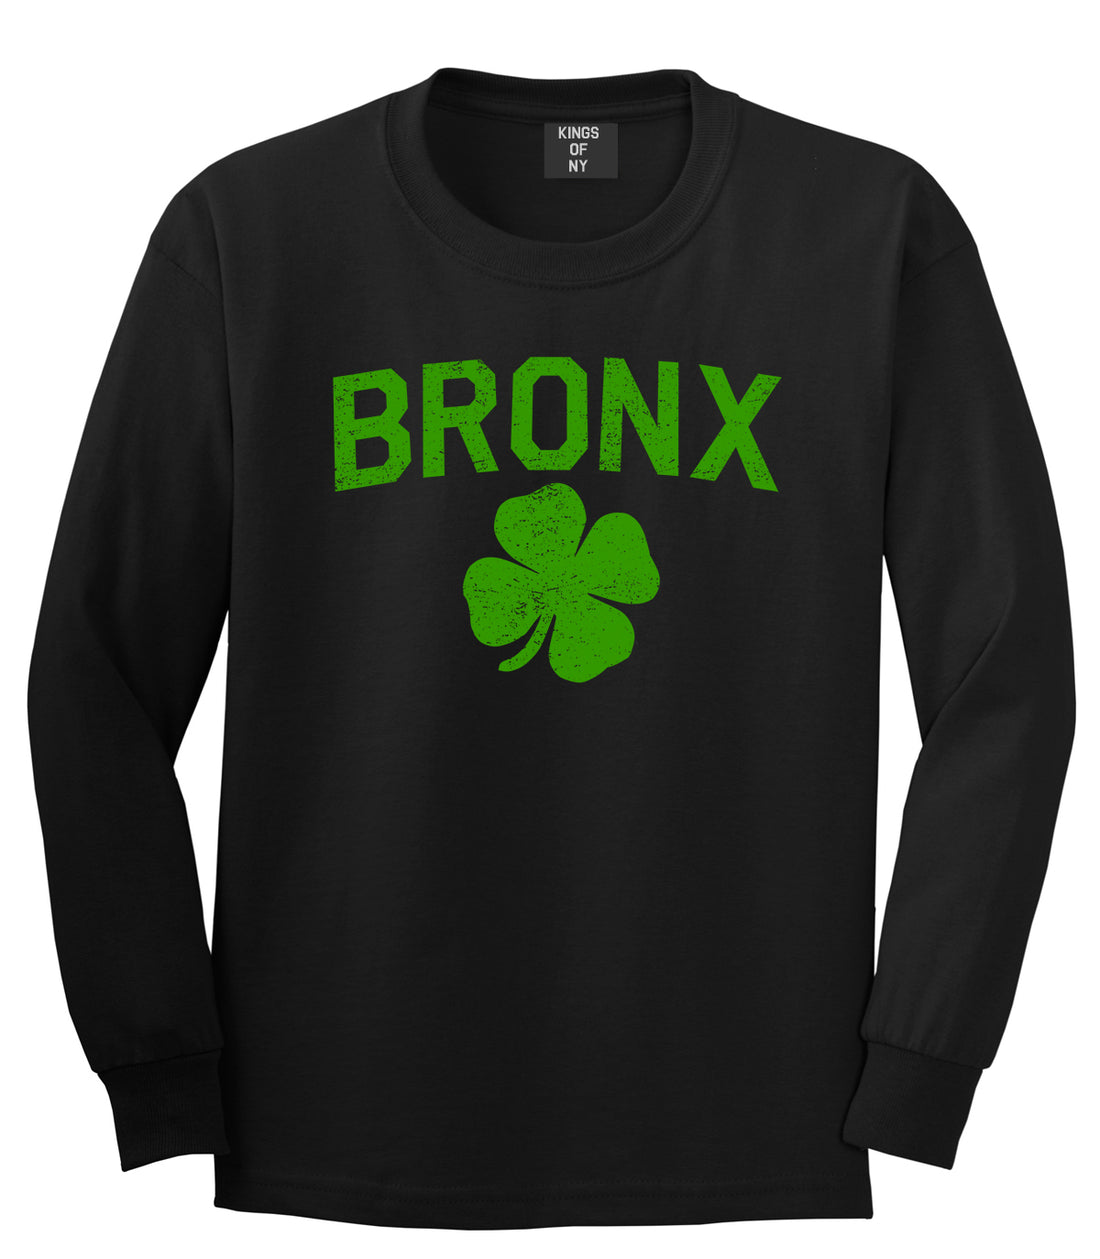 The Bronx Irish St Patricks Day Mens Long Sleeve T-Shirt Black